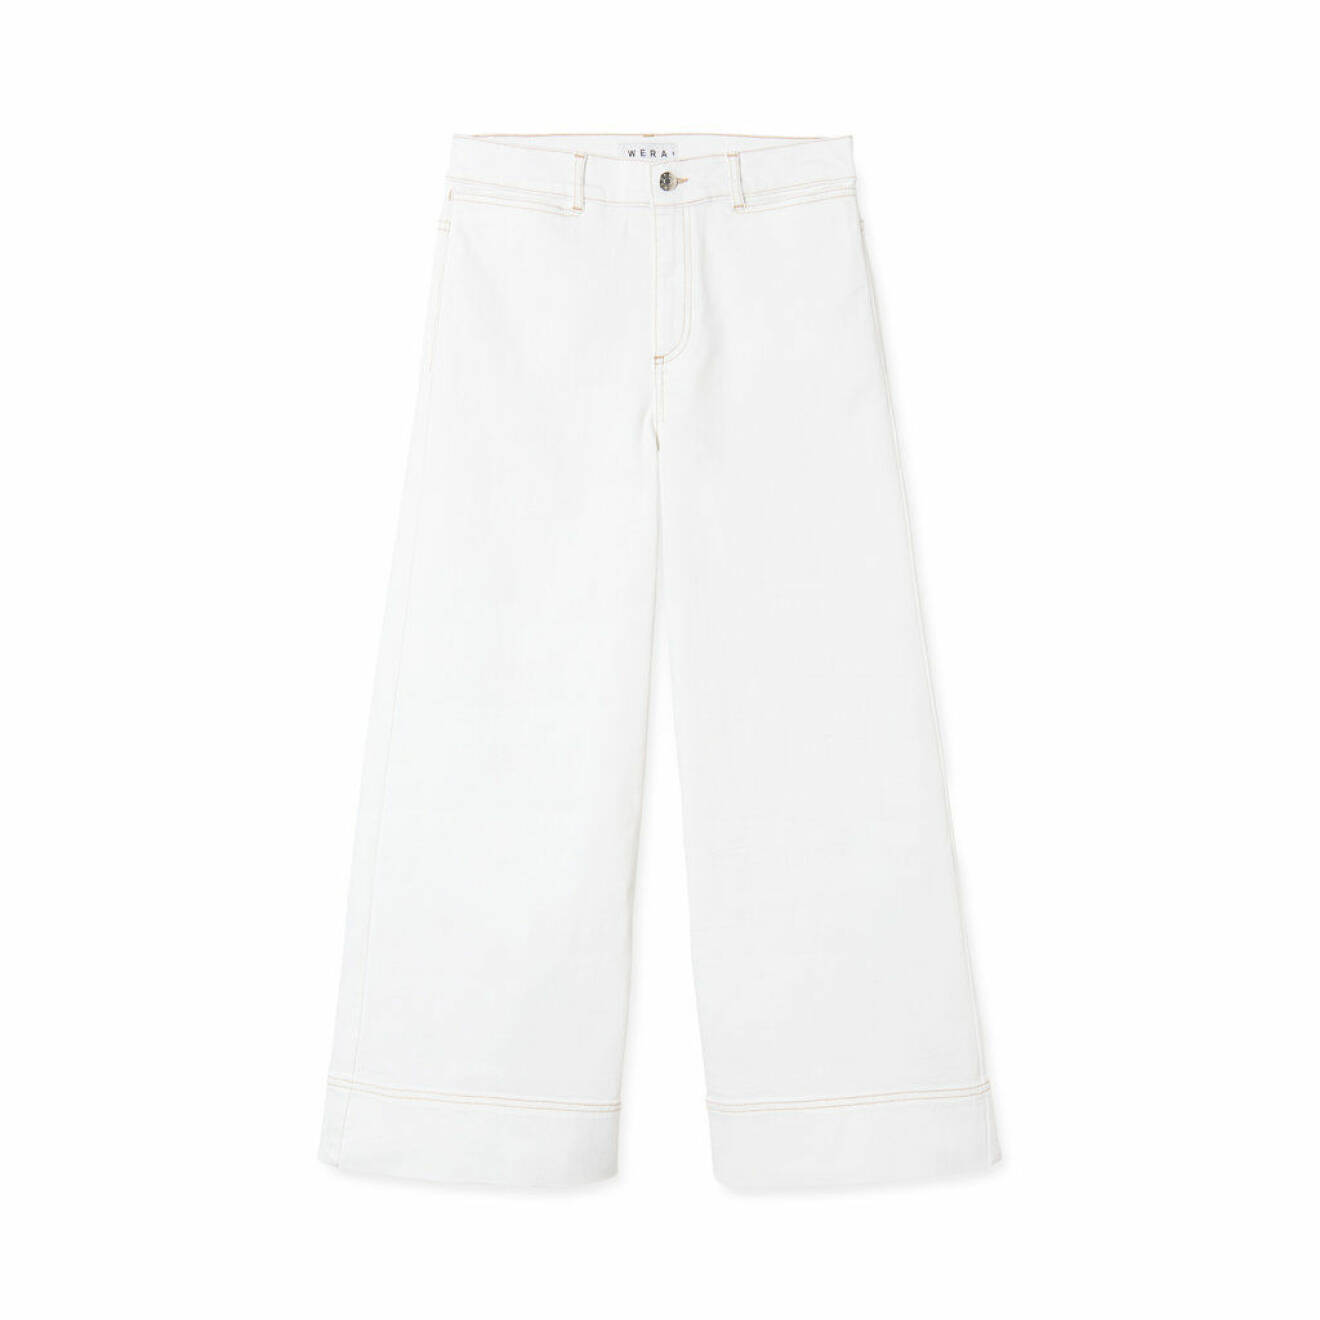 Vida jeans i vitt med sömmar i en beige nyans, från Wera. Shoppa jeansen här!